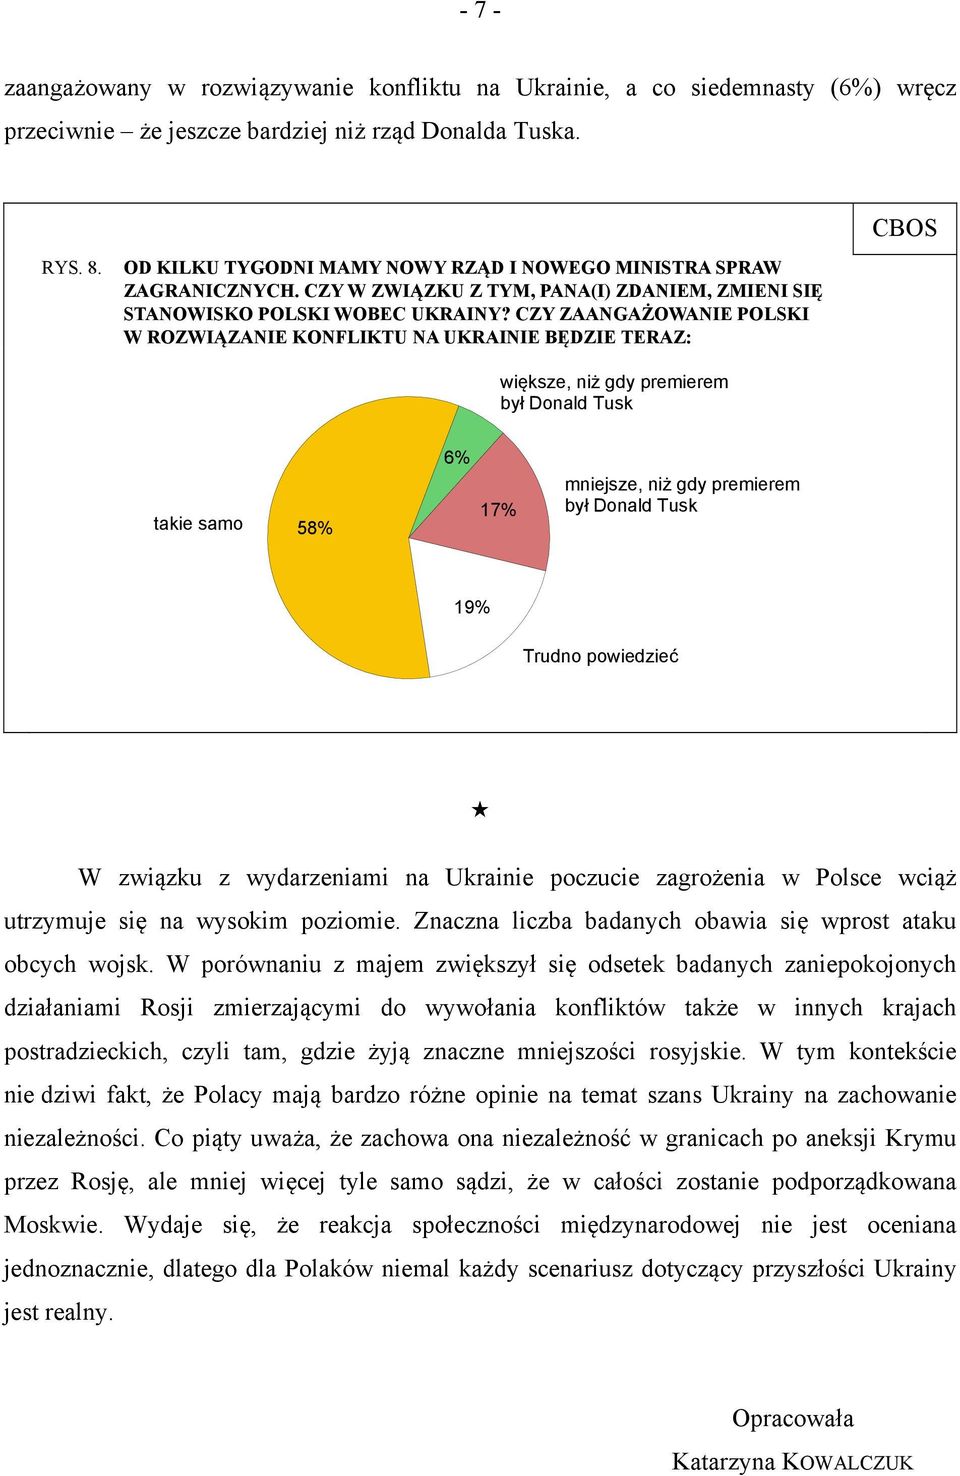 CZY ZAANGAŻOWANIE POLSKI W ROZWIĄZANIE KONFLIKTU NA UKRAINIE BĘDZIE TERAZ: większe, niż gdy premierem był Donald Tusk takie samo 58% 6% 17% mniejsze, niż gdy premierem był Donald Tusk 19% Trudno